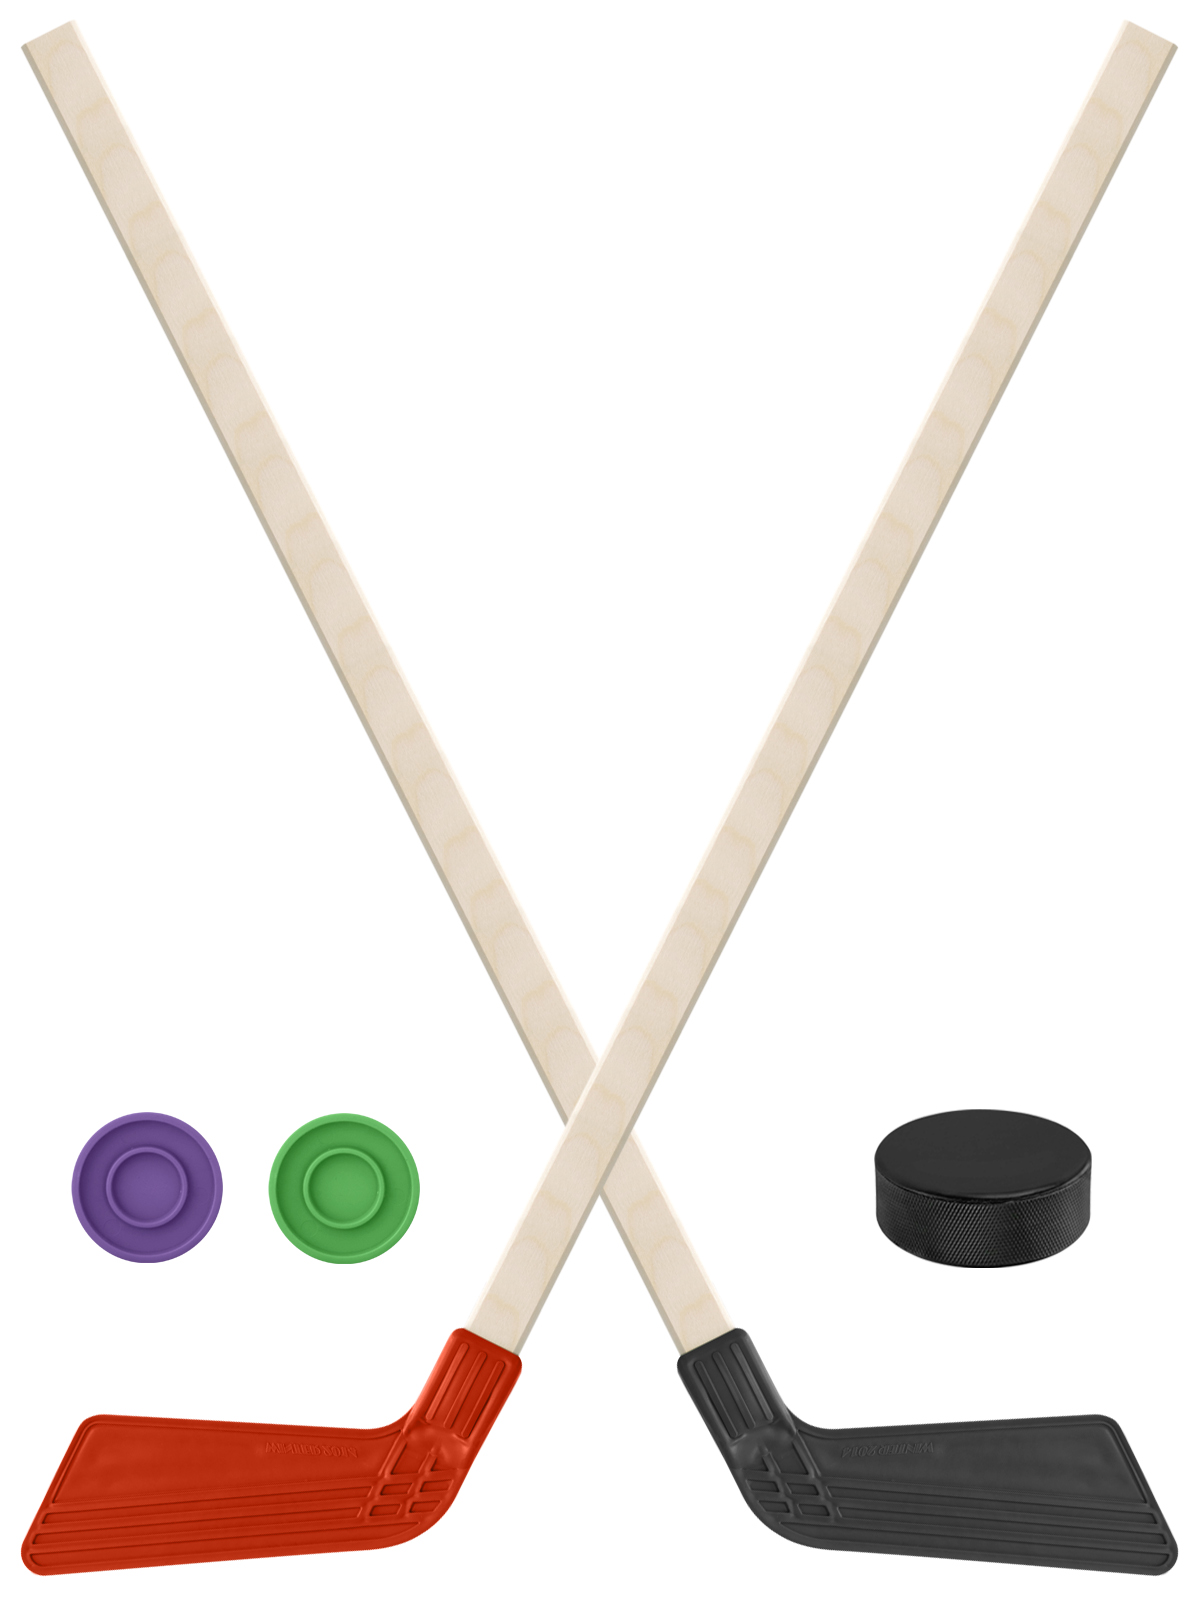 Детский хоккейный набор Задира-плюс  Клюшка хоккейная 2шт(красн,чёрн)+2 шайбы+Шайба 75 мм детский хоккейный набор задира плюс 3 в 1 клюшка хоккейная 80 см 2 черн 1крас 3 шайбы